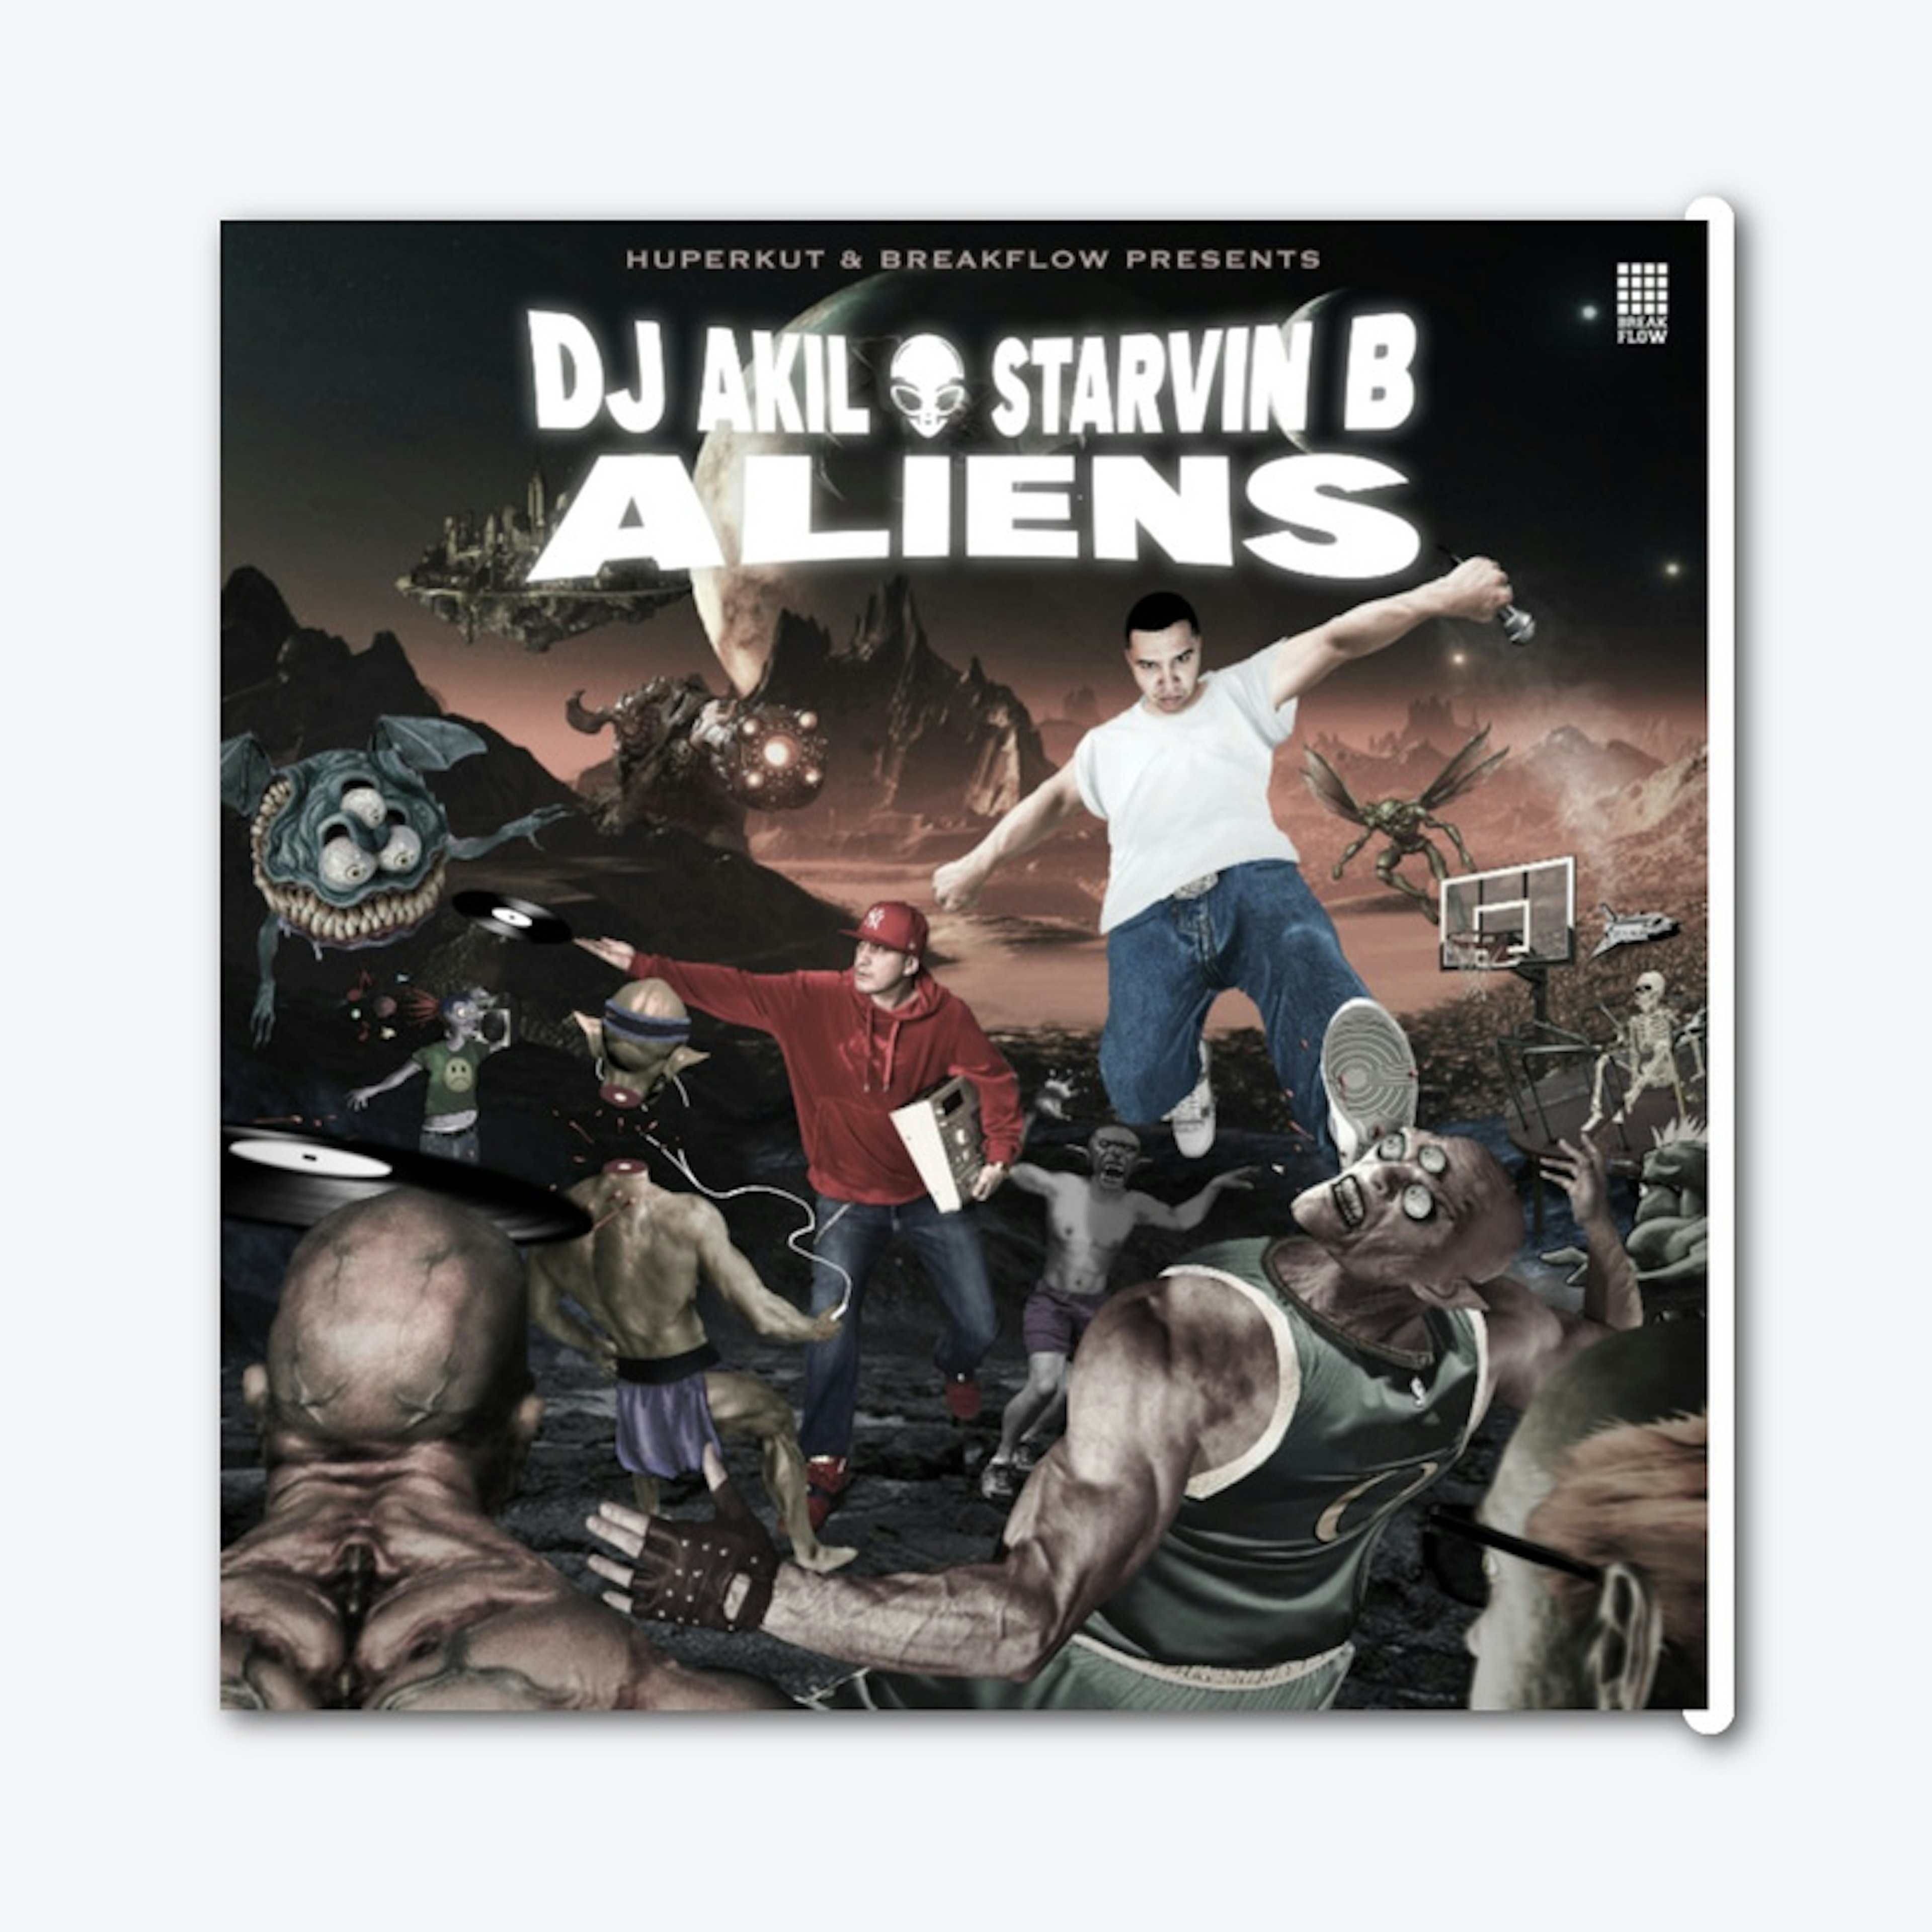 DJ AKIL & STARVIN B  Aliens